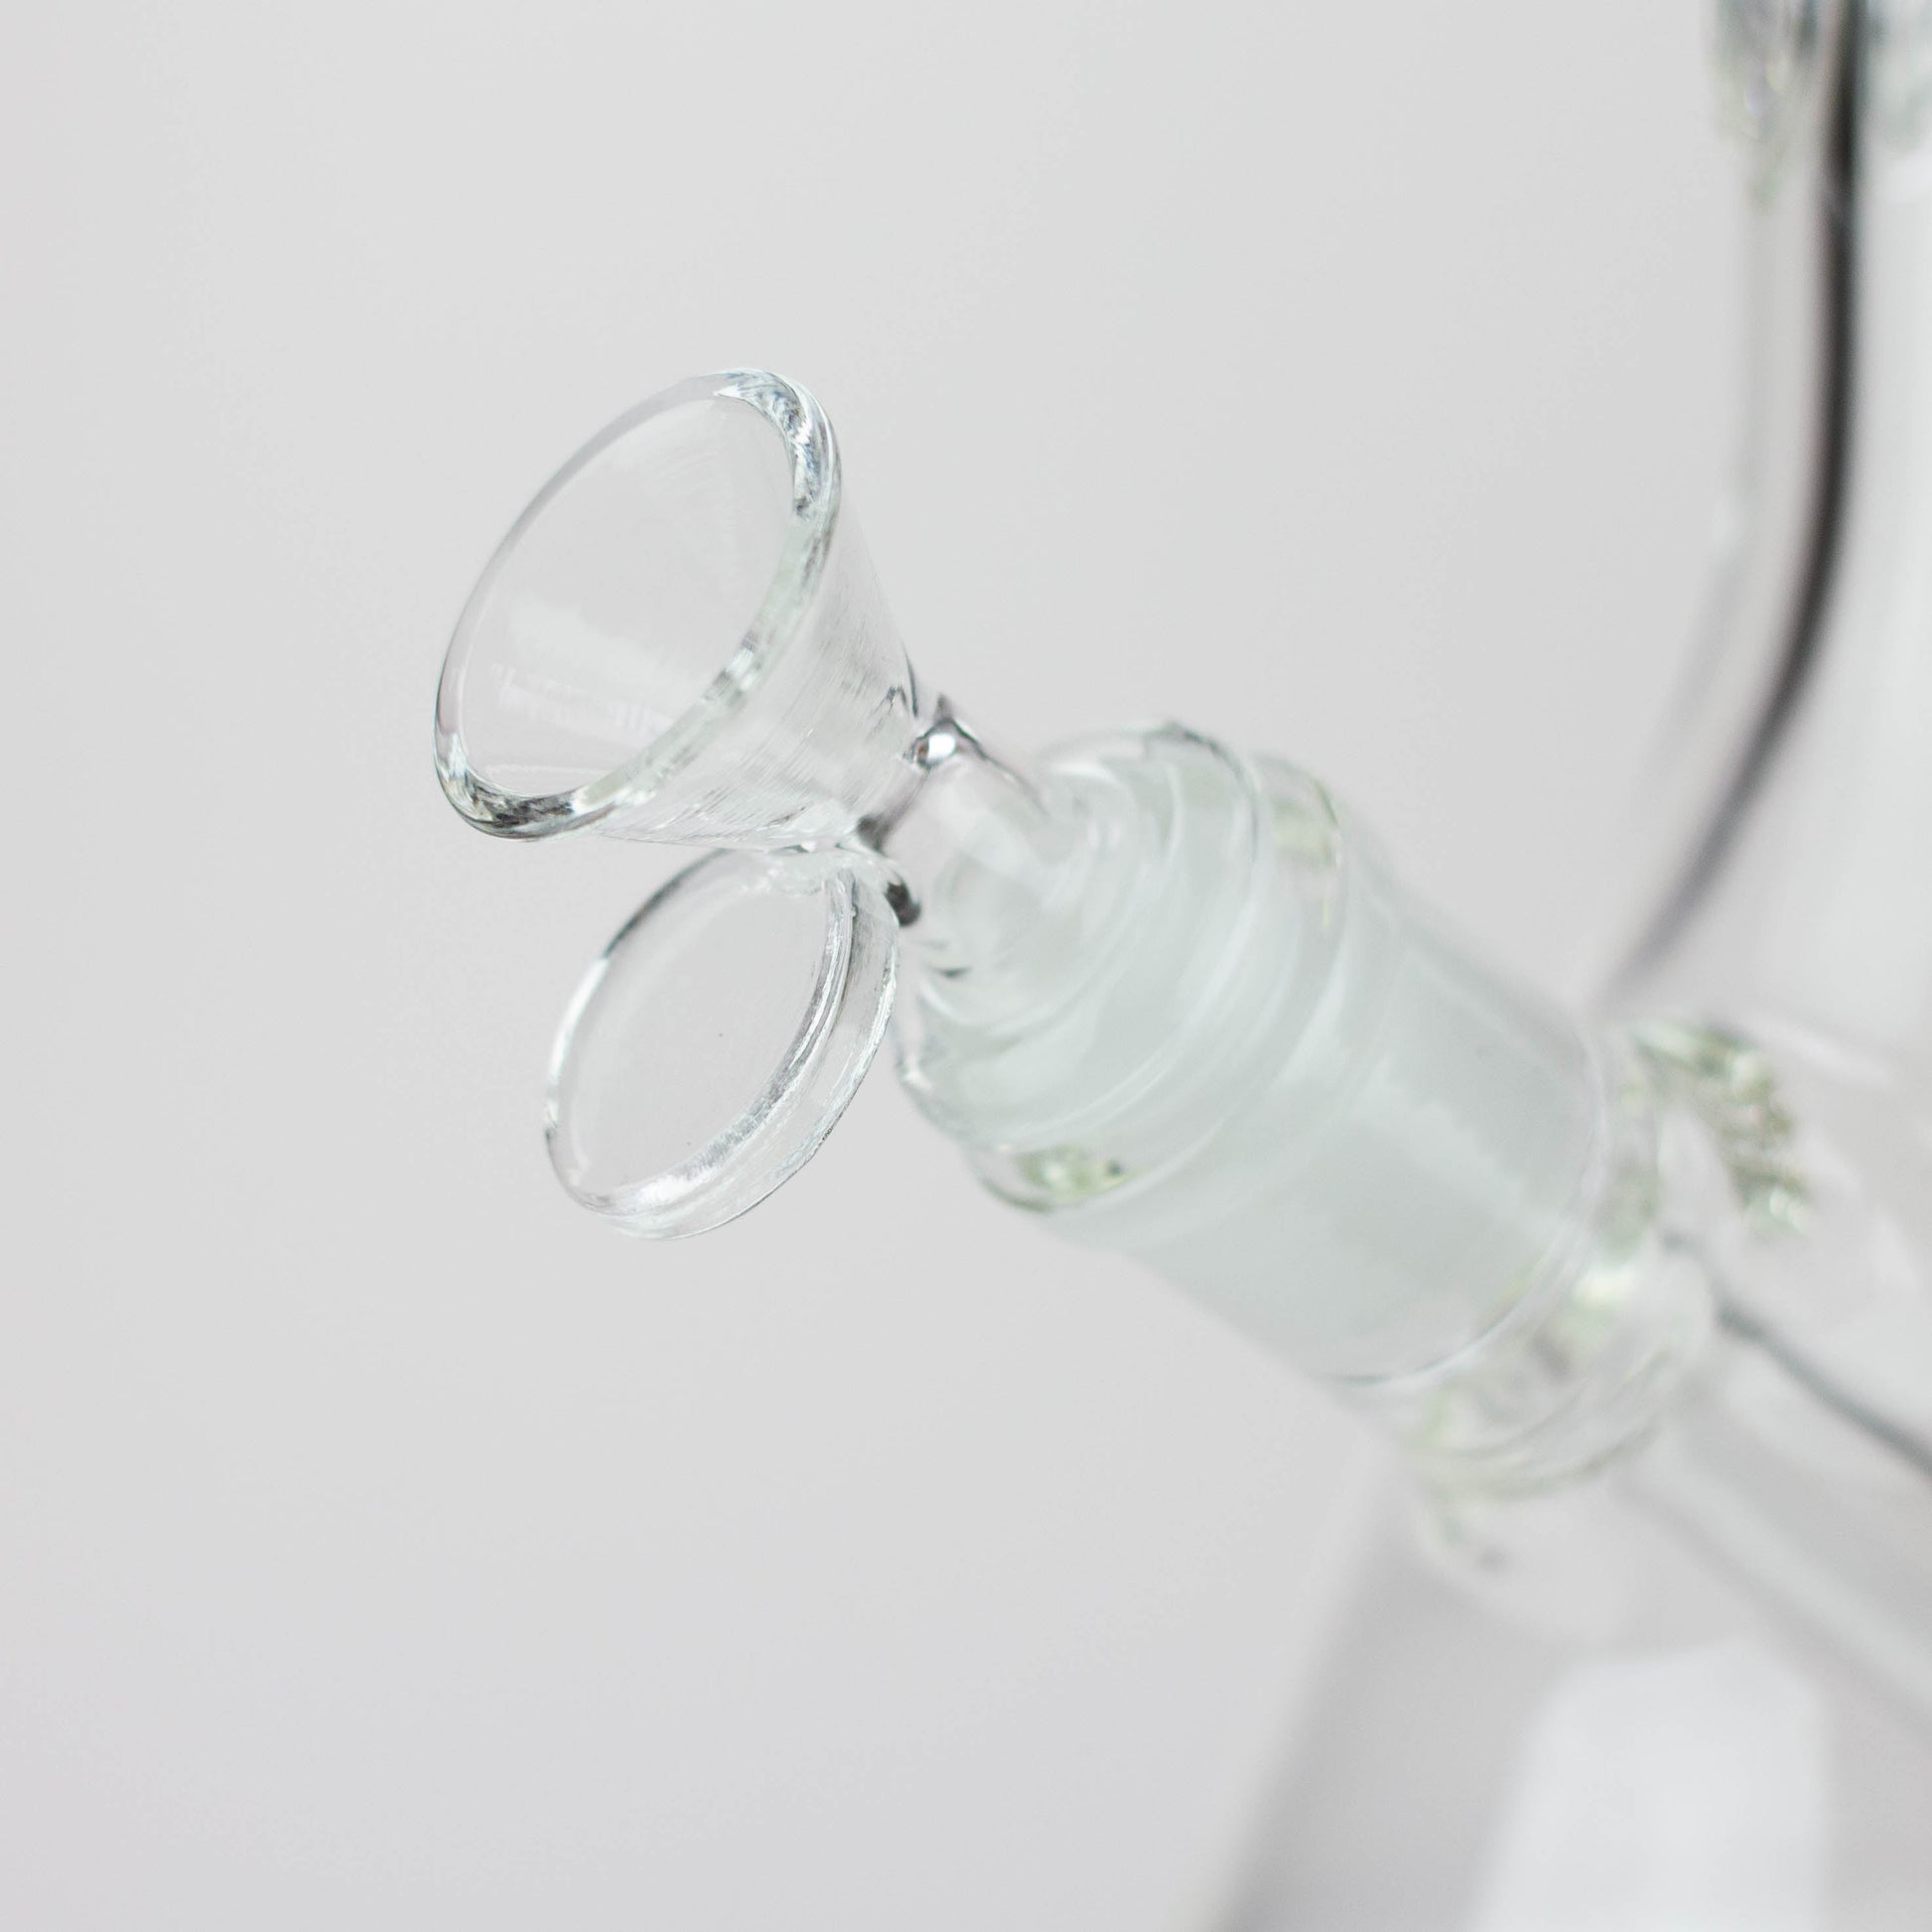 WellCann | 14" 7mm Beaker glass Bong_6